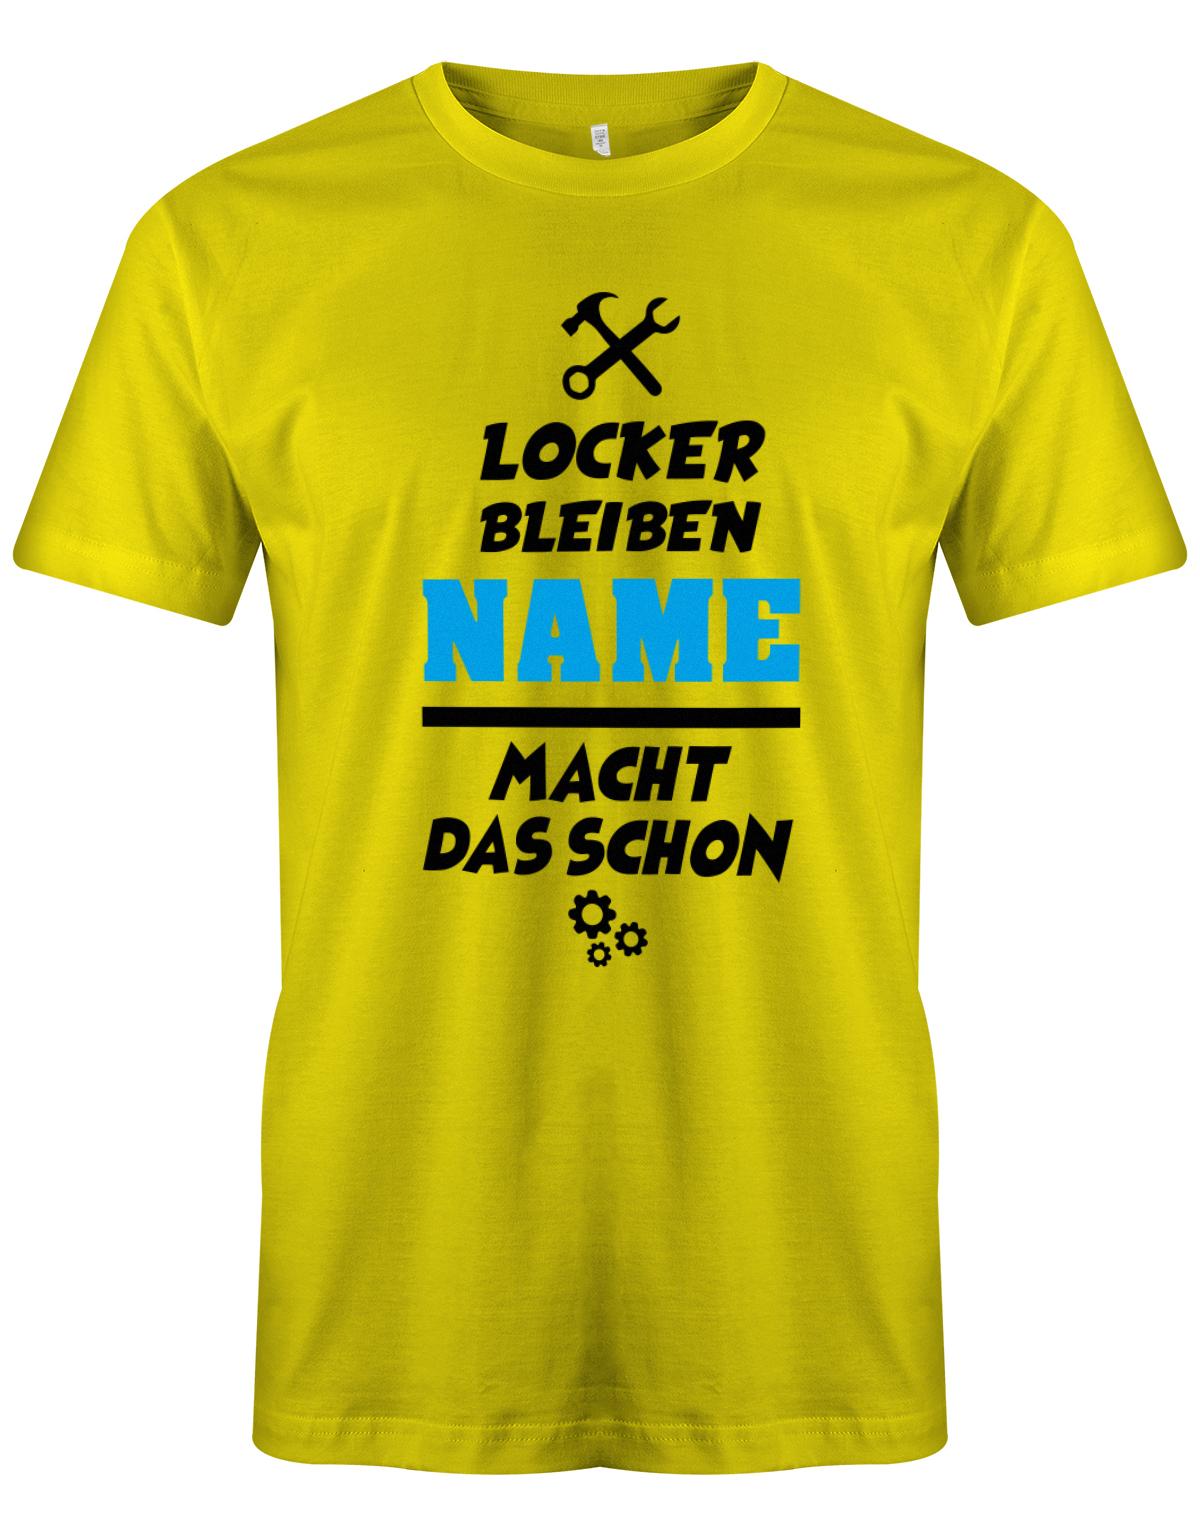 Locker bleiben Wunschname macht das schon - Personalisierbar - Herren T-Shirt myShirtStore Gelb